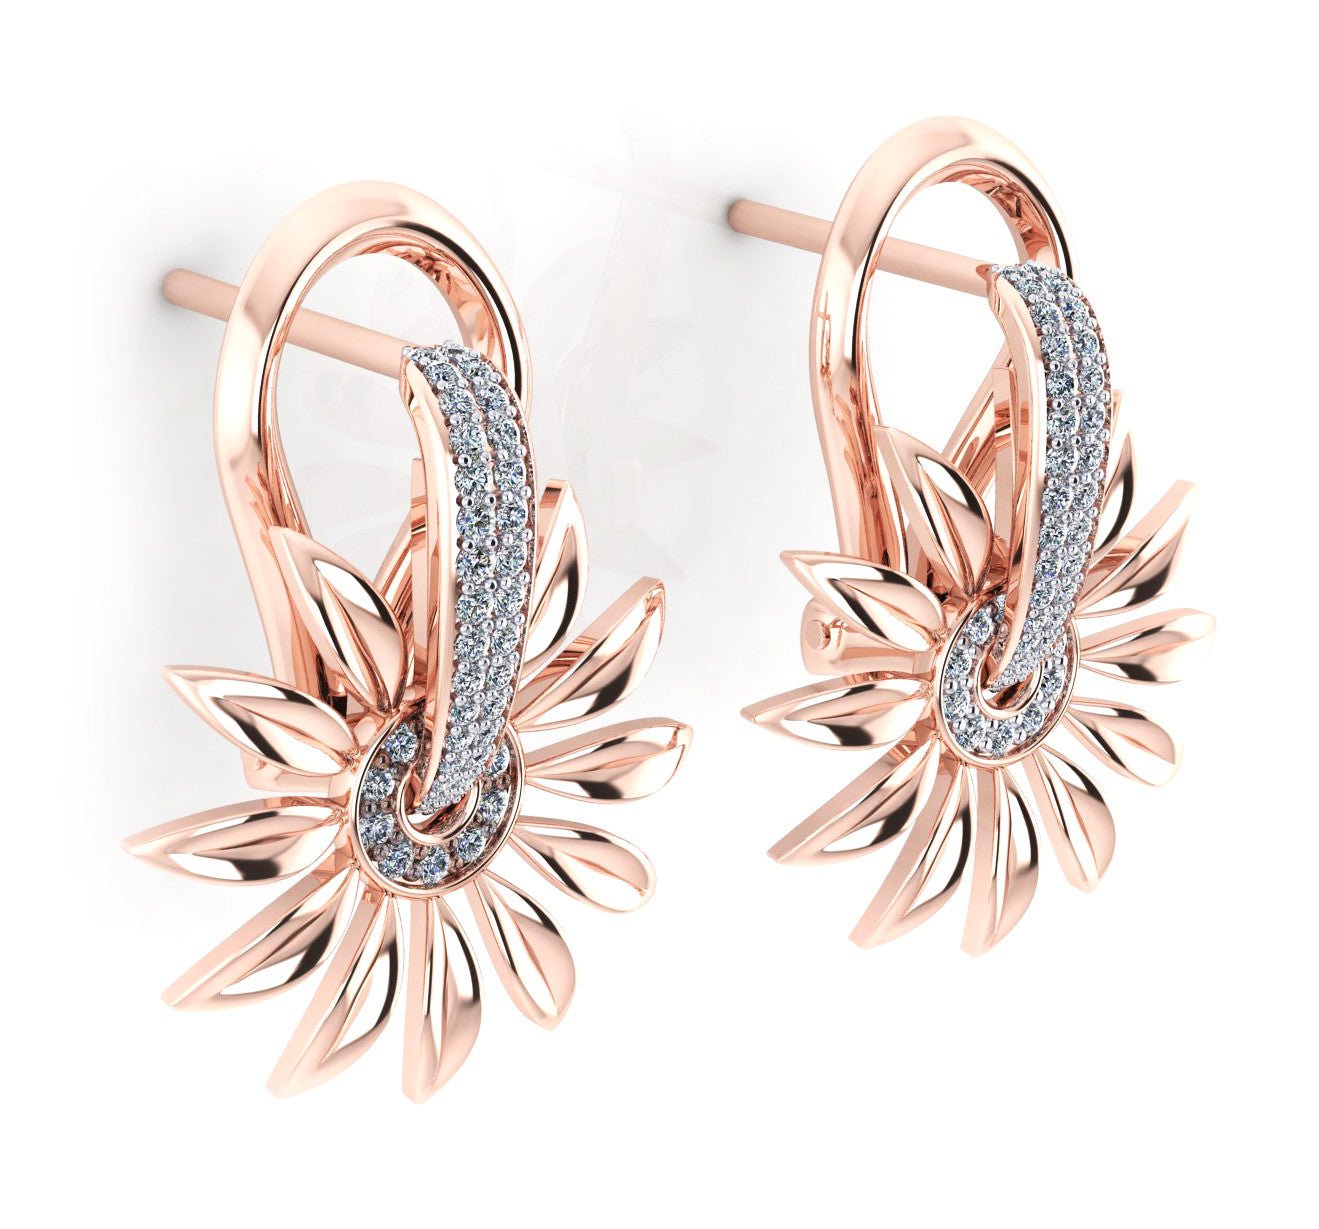 18ct Rose gold diamond pave flower earrings - ForeverJewels Design Studio 8